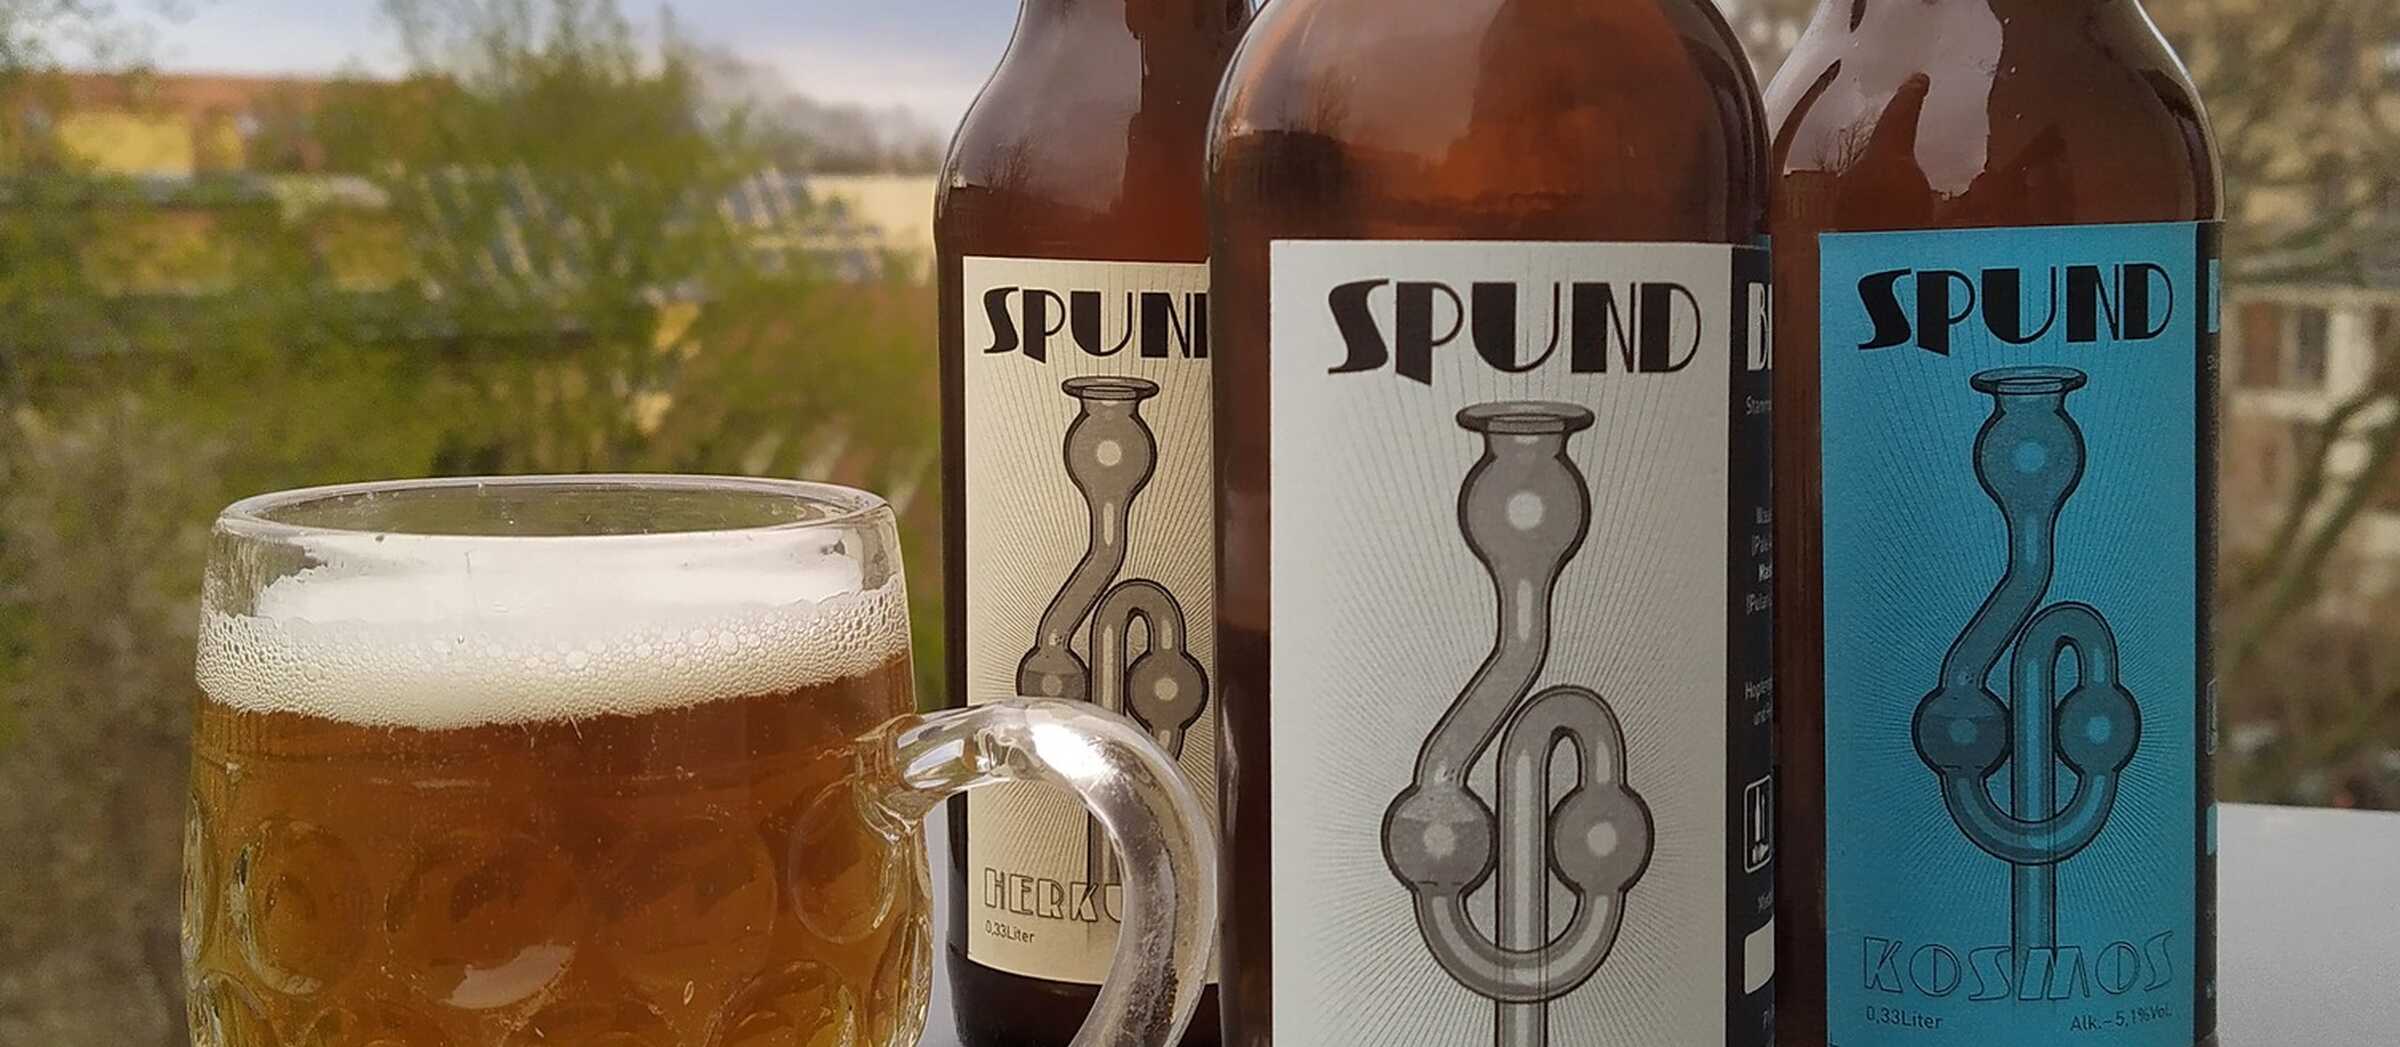 Spund-Bier